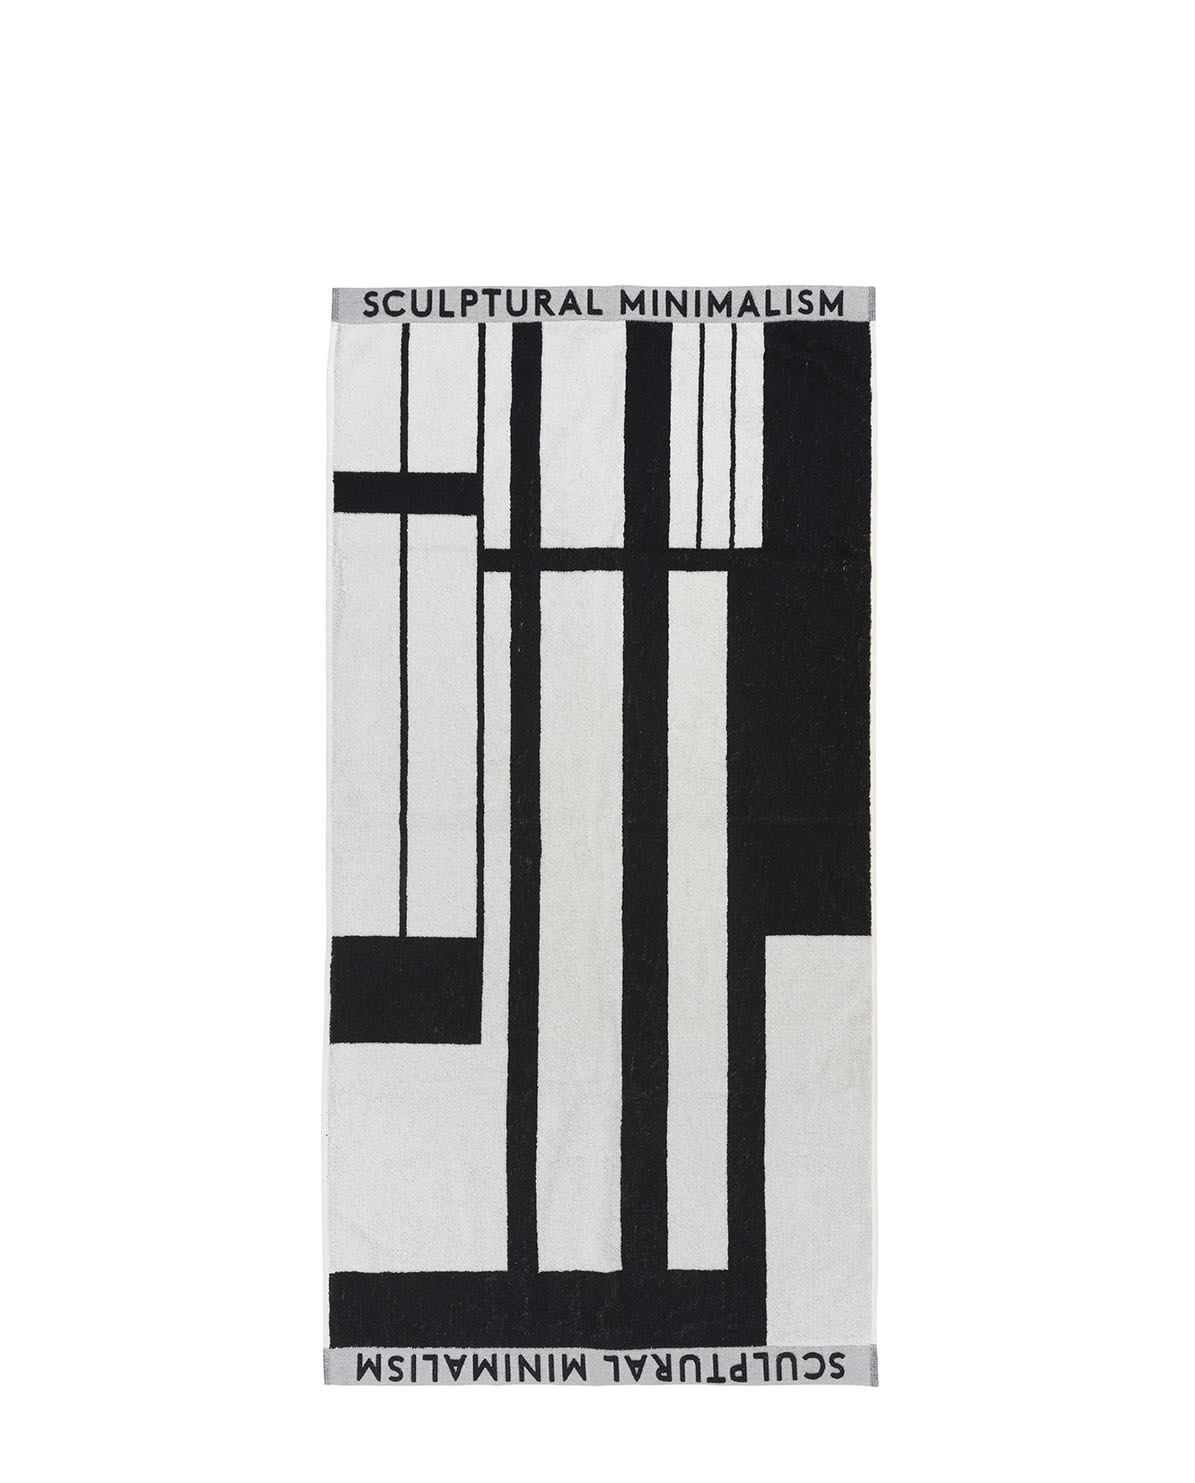 kristina dam studio handtuch minimal 140x70 cm black/off-white